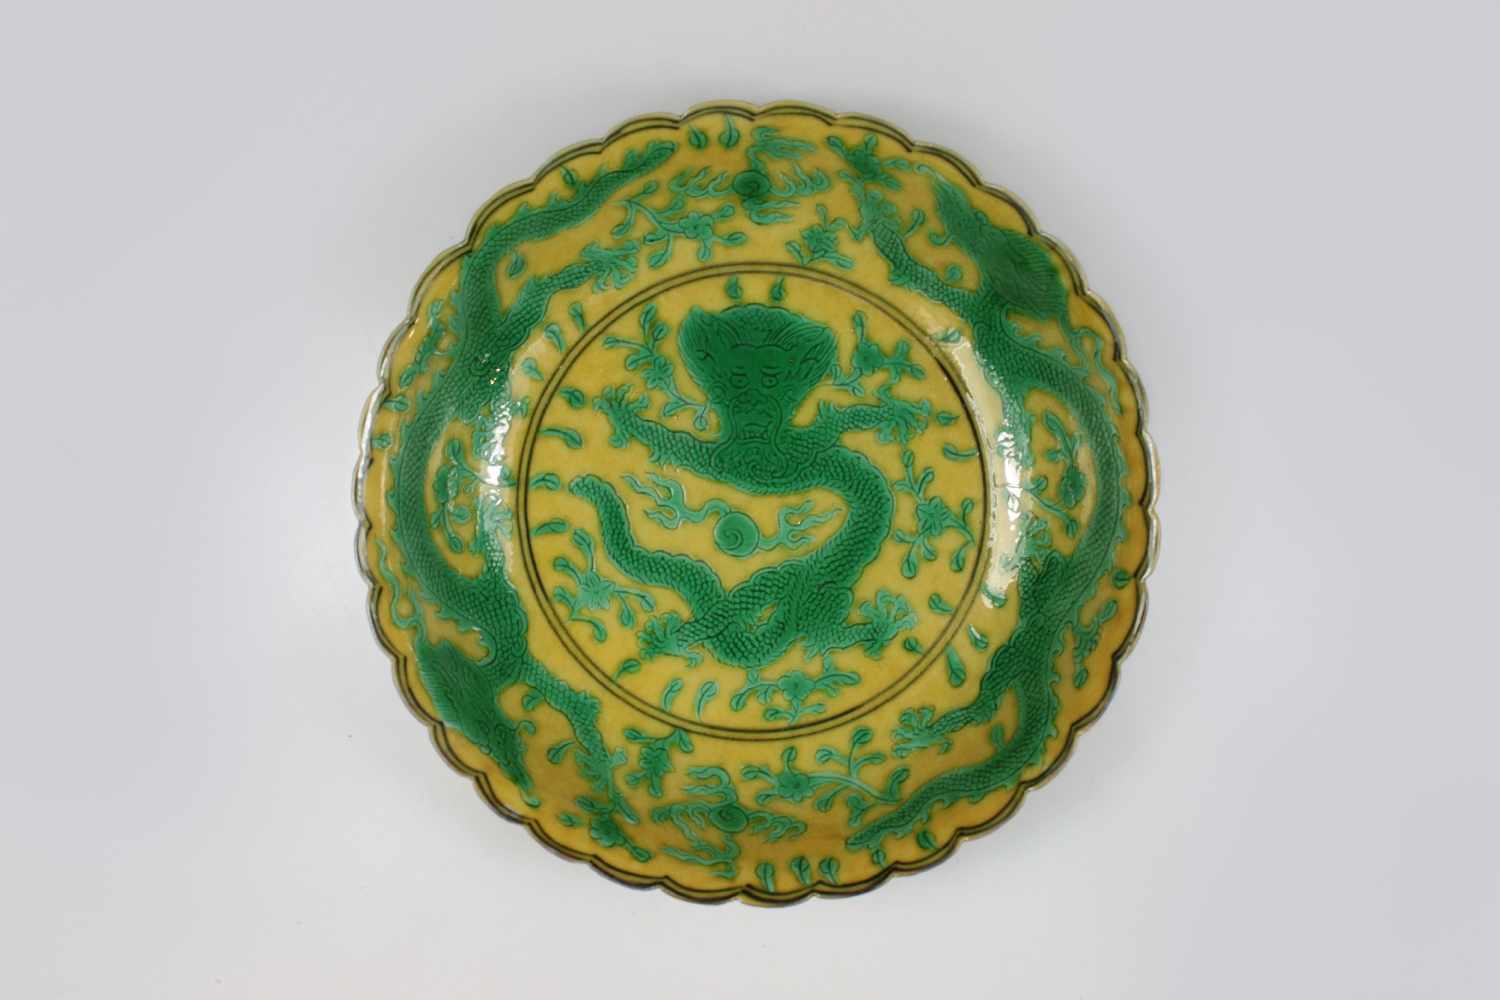 Kleiner Teller, China 18. Jh., Drachendekor in grün auf gelbem Grund, Sechszeichen-Siegelmarke